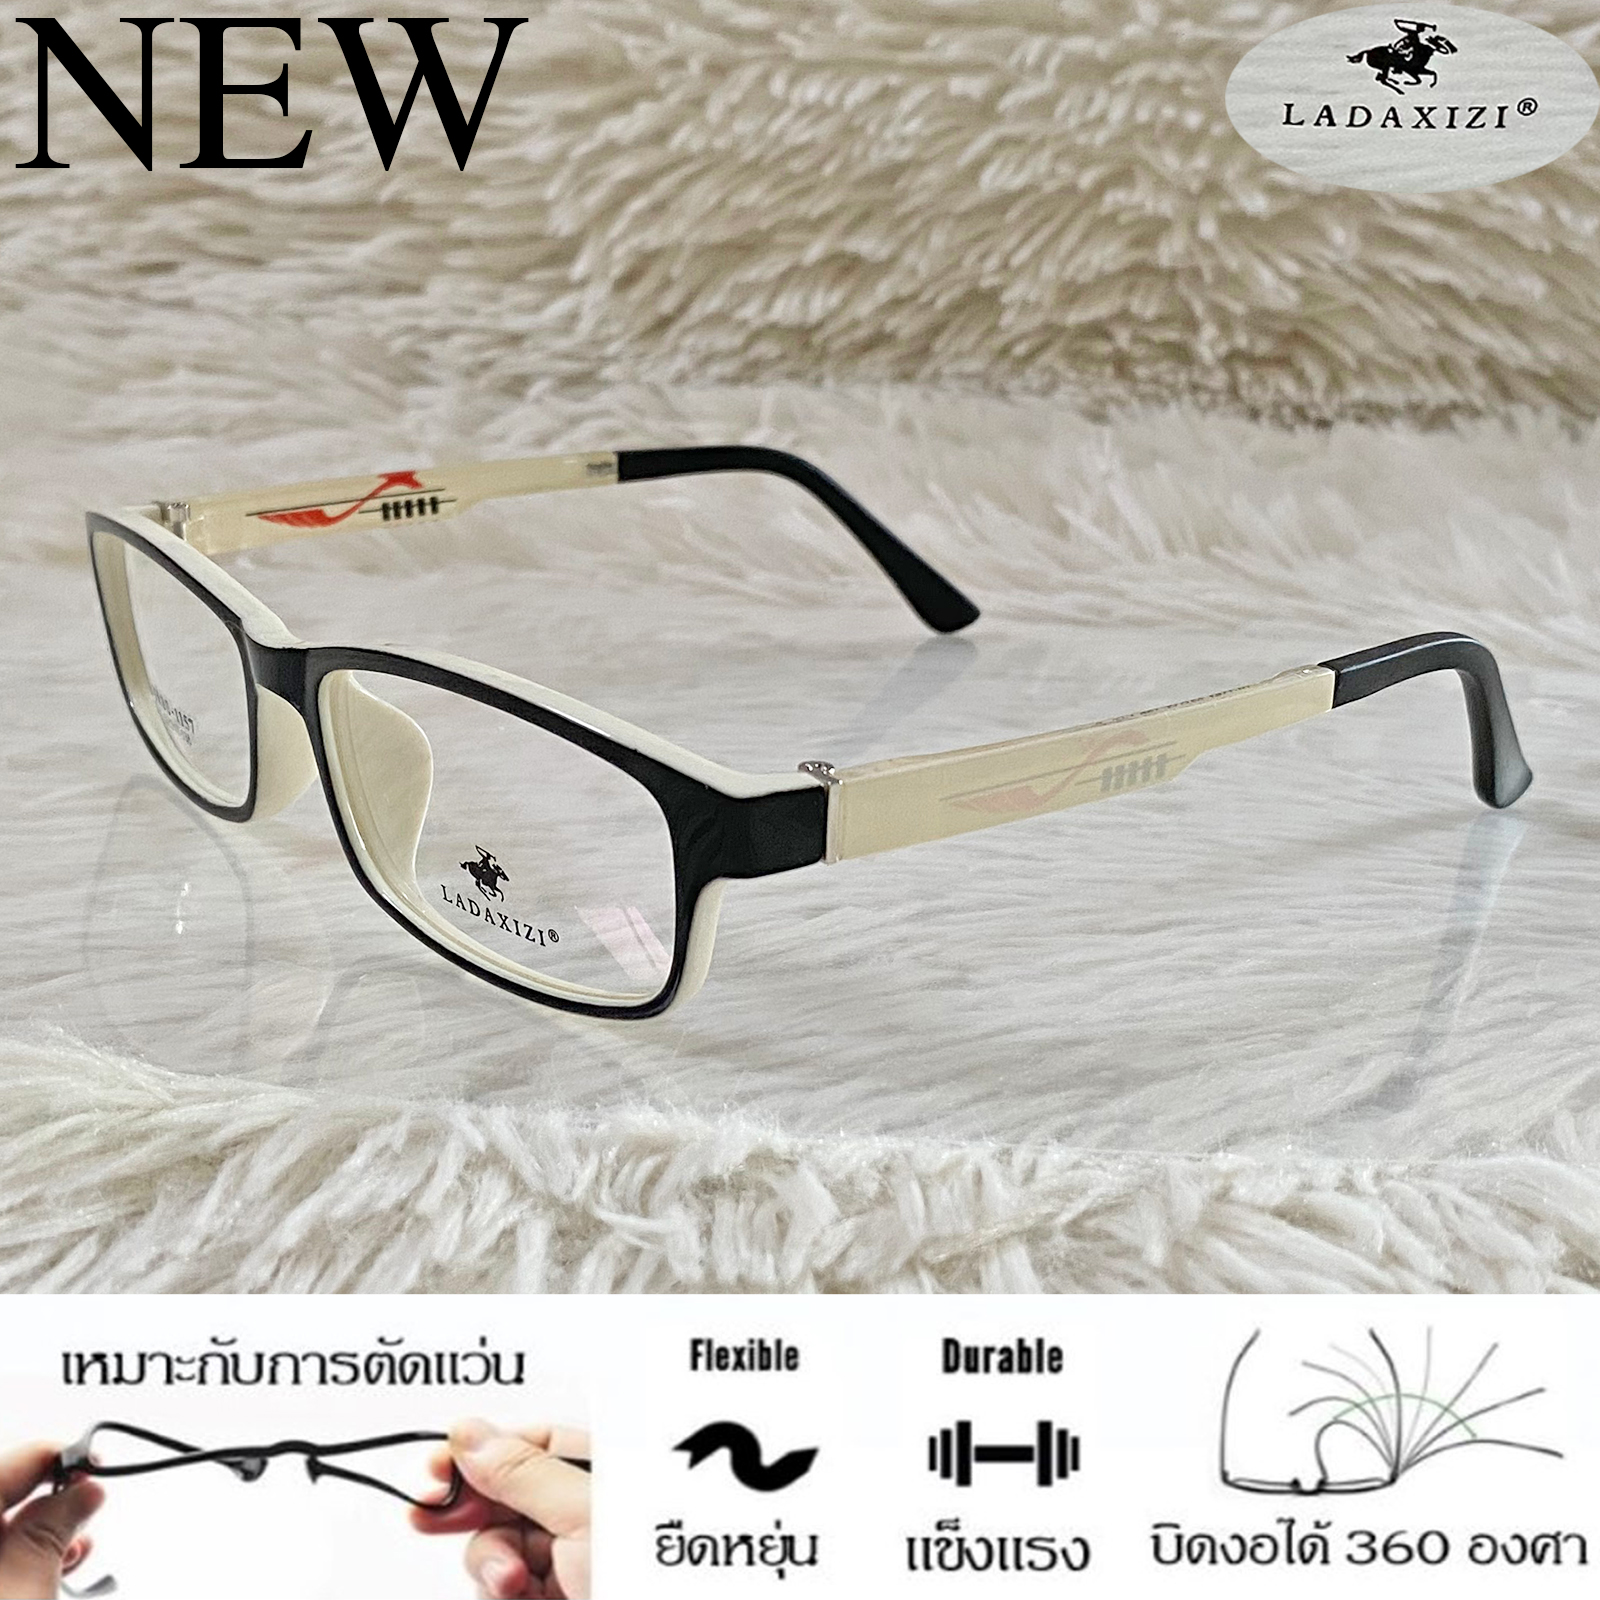 กรอบแว่นตา TR 90 สำหรับตัดเลนส์ แว่นตา Fashion ชาย-หญิง รุ่น LADAXIZI 1157 สีดำตัดขาว กรอบเต็ม ทรงเหลี่ยม ขาข้อต่อ ทนความร้อนสูง รับตัดเลนส์ ทุกชนิด